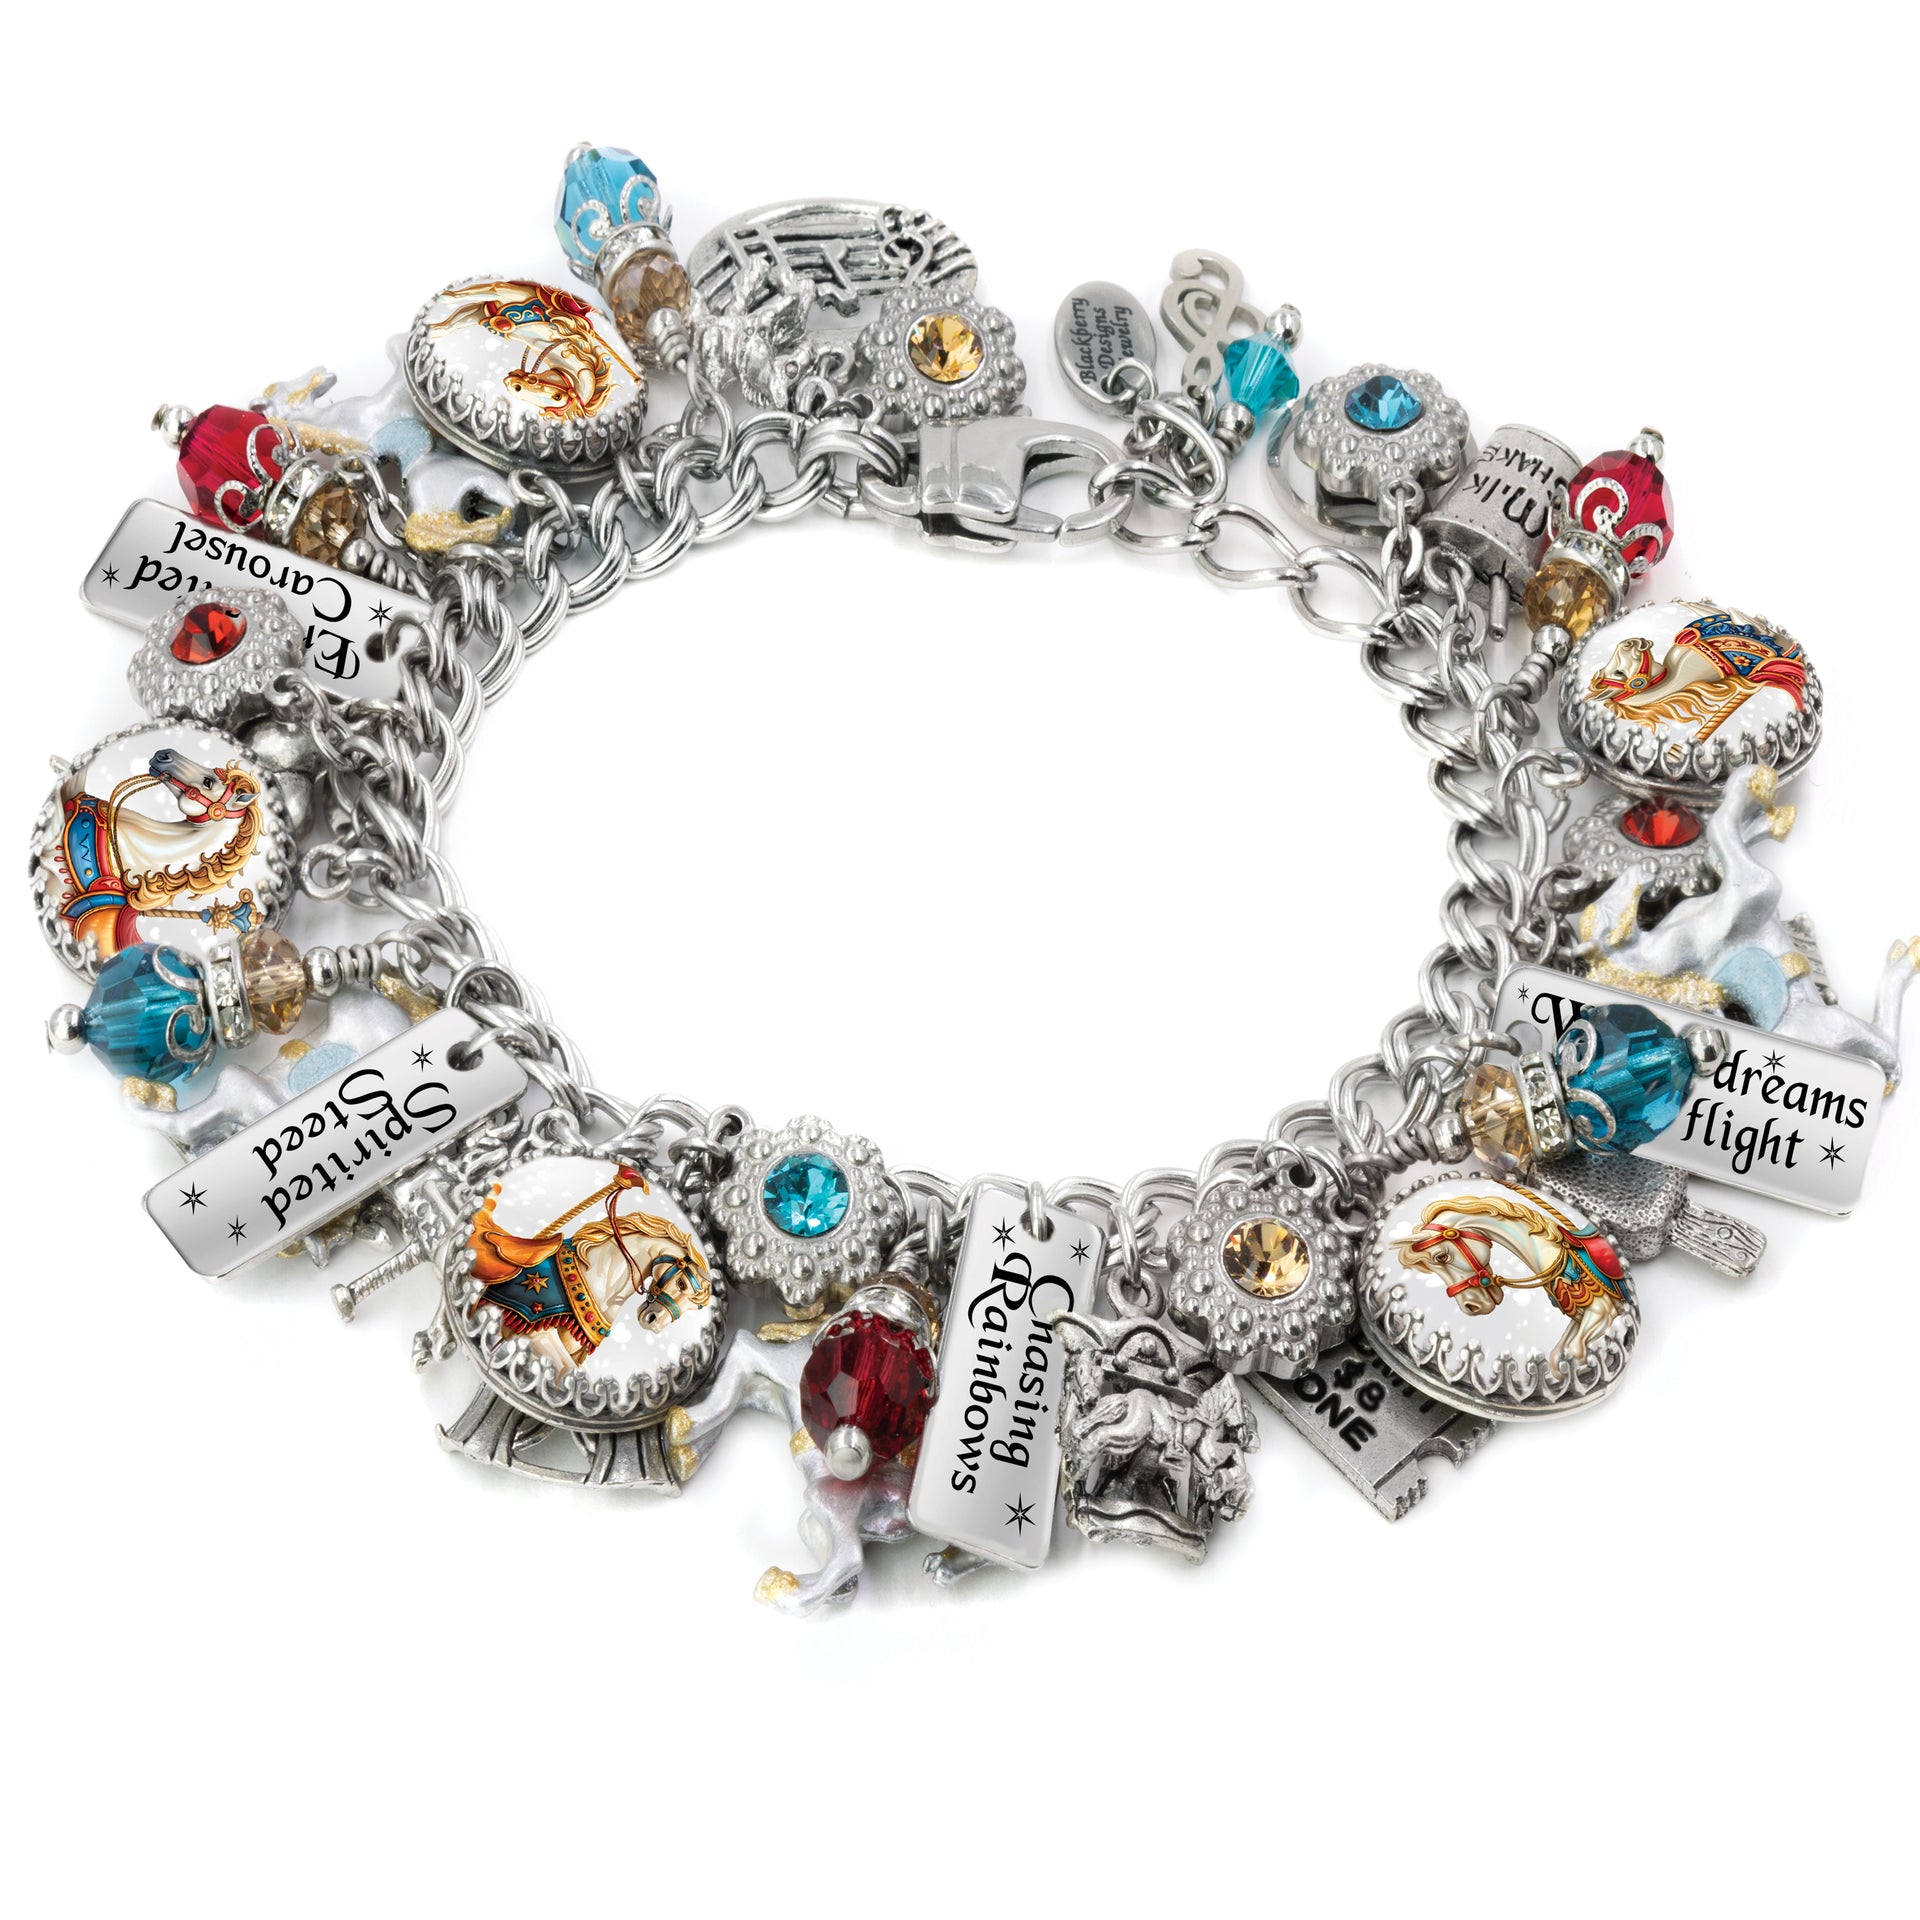 carousel charm bracelet